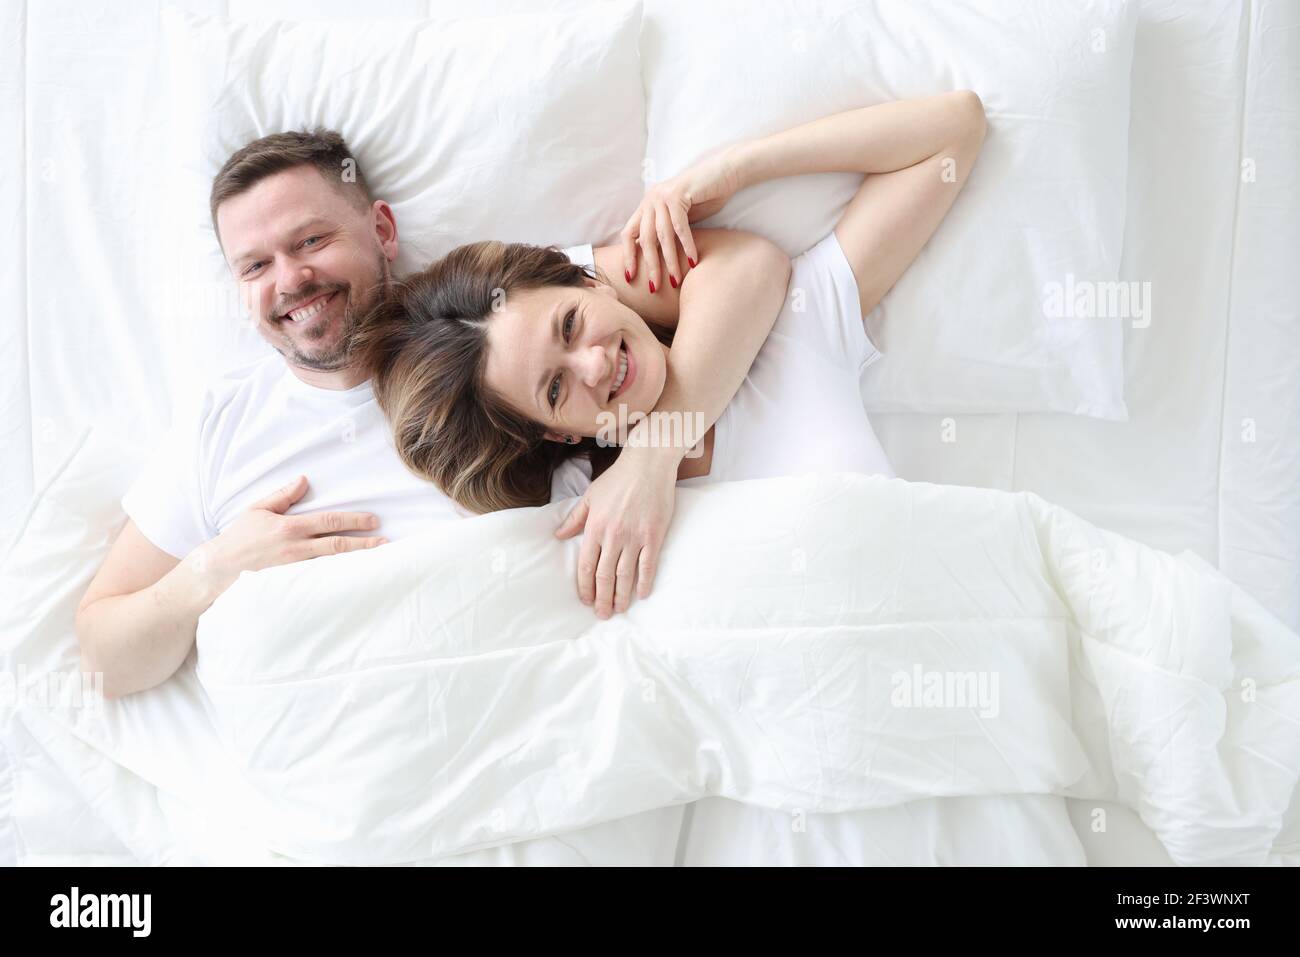 Lächelnd und glücklich liegen Mann und Frau in einer Umarmung Auf dem Bett  Stockfotografie - Alamy